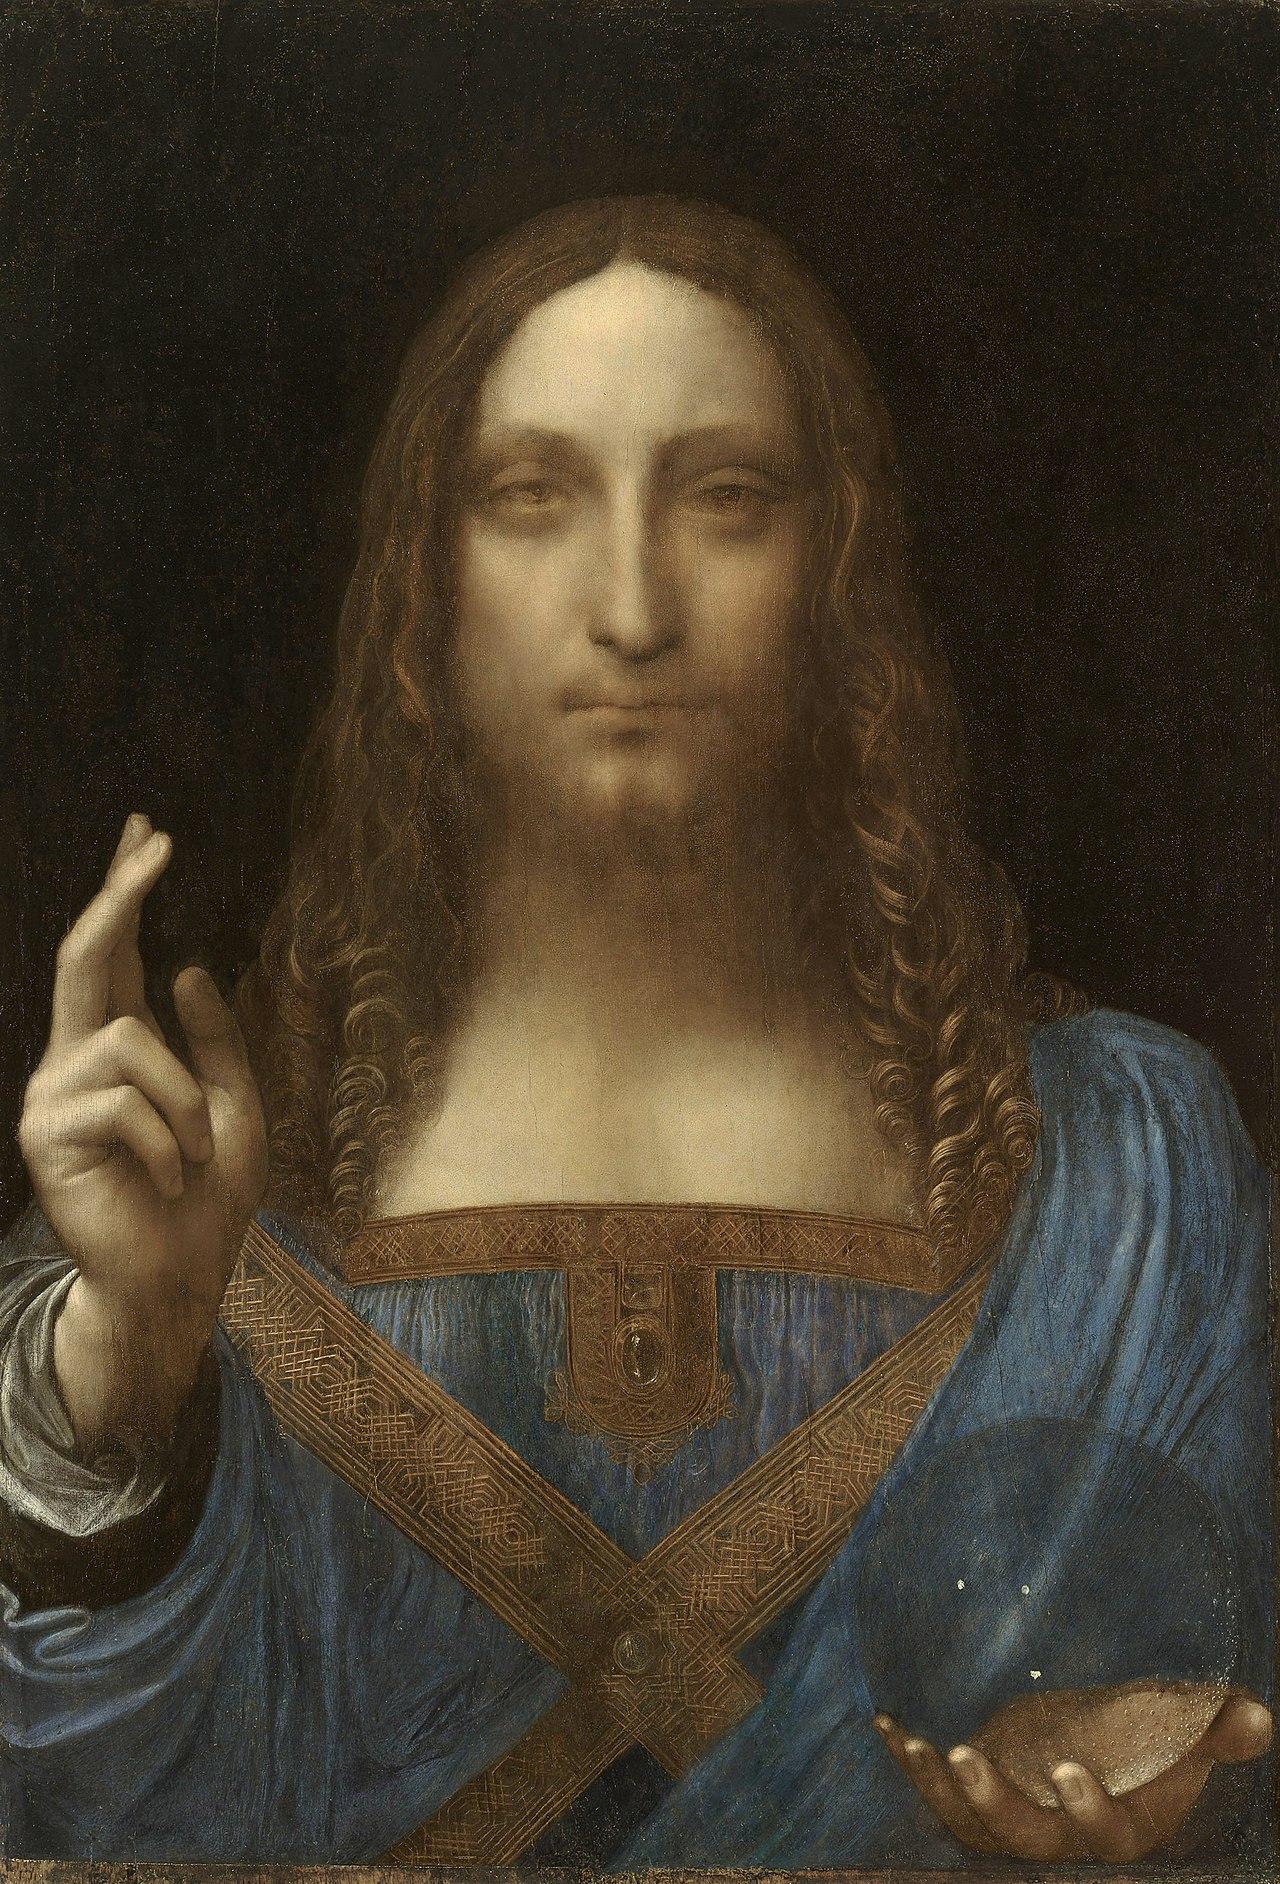 Salvator Mundi,c.1500 Leonardo da Vinci, oil on walnut 45.4 × 65.6 cm. Image from Wiki